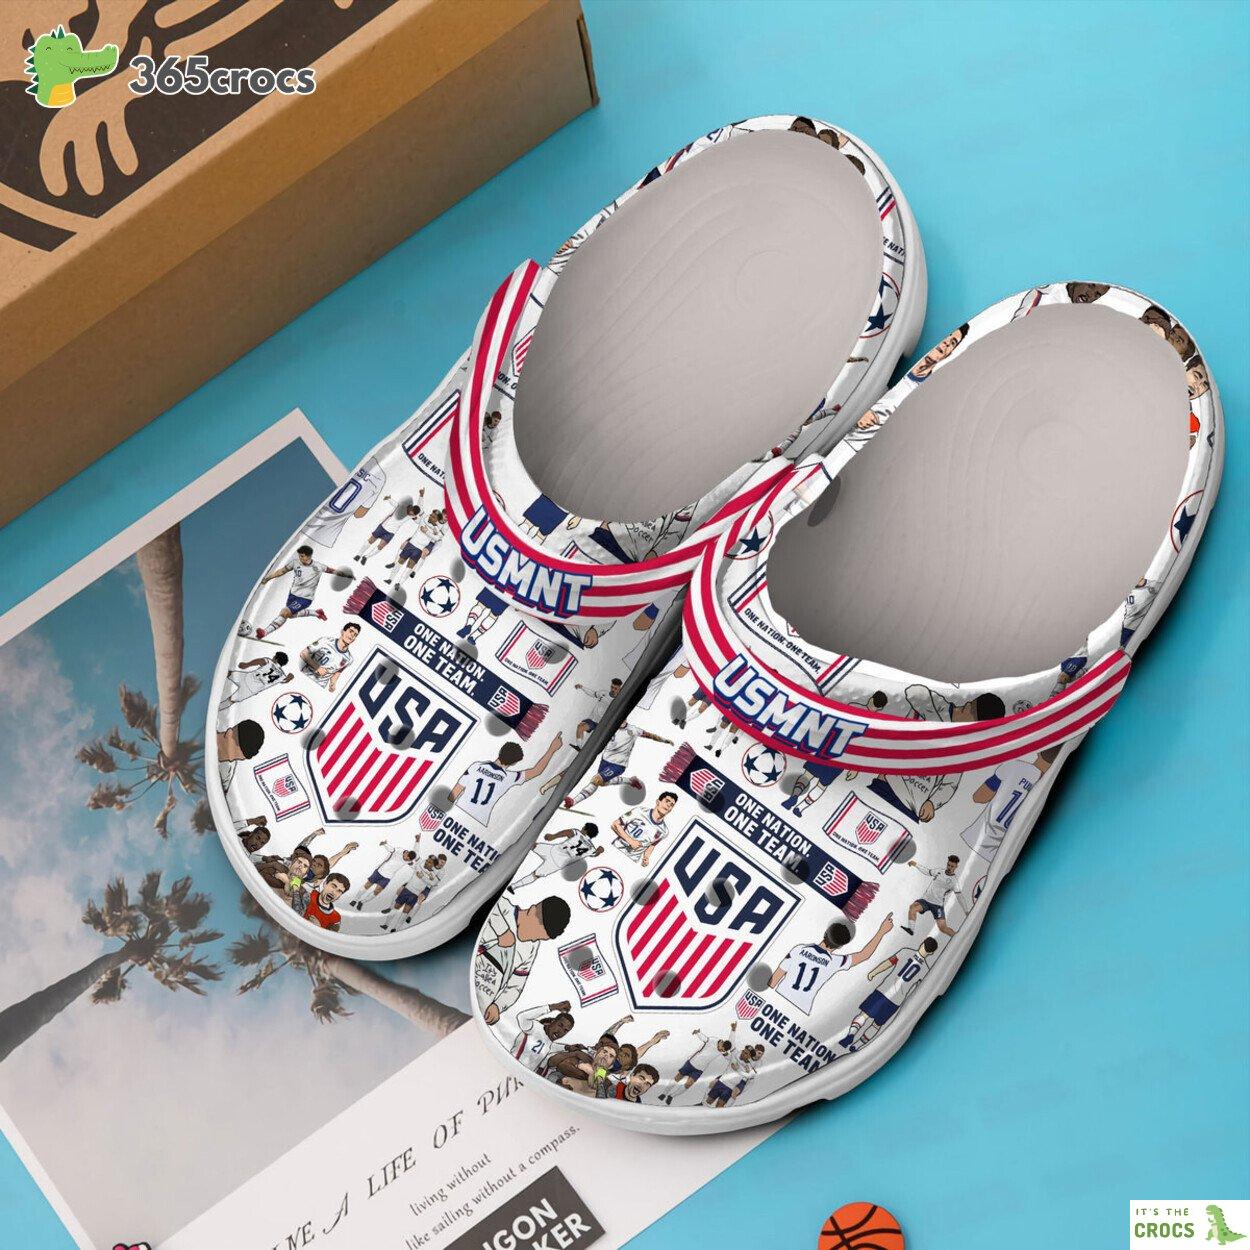 US Men’s National Soccer Team Premium Crocs Clogs Shoes Comfortable